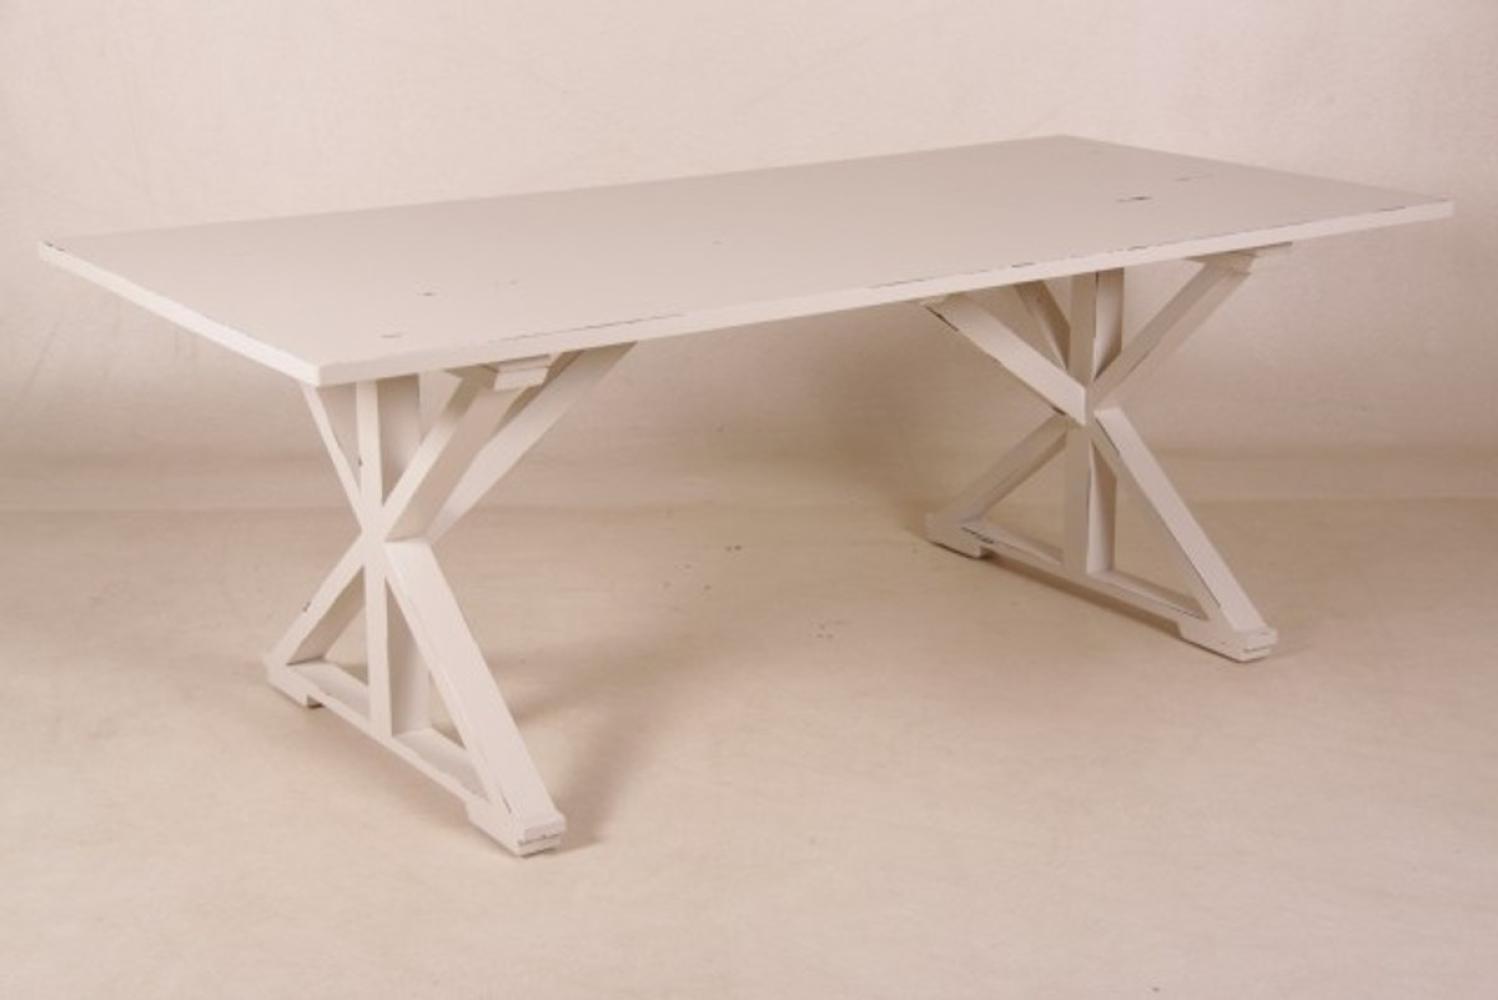 Casa Padrino Vintage Teak Esstisch Antik Stil Weiß 210 x 100 cm - Landhaus Stil Tisch Teakholz Bild 1